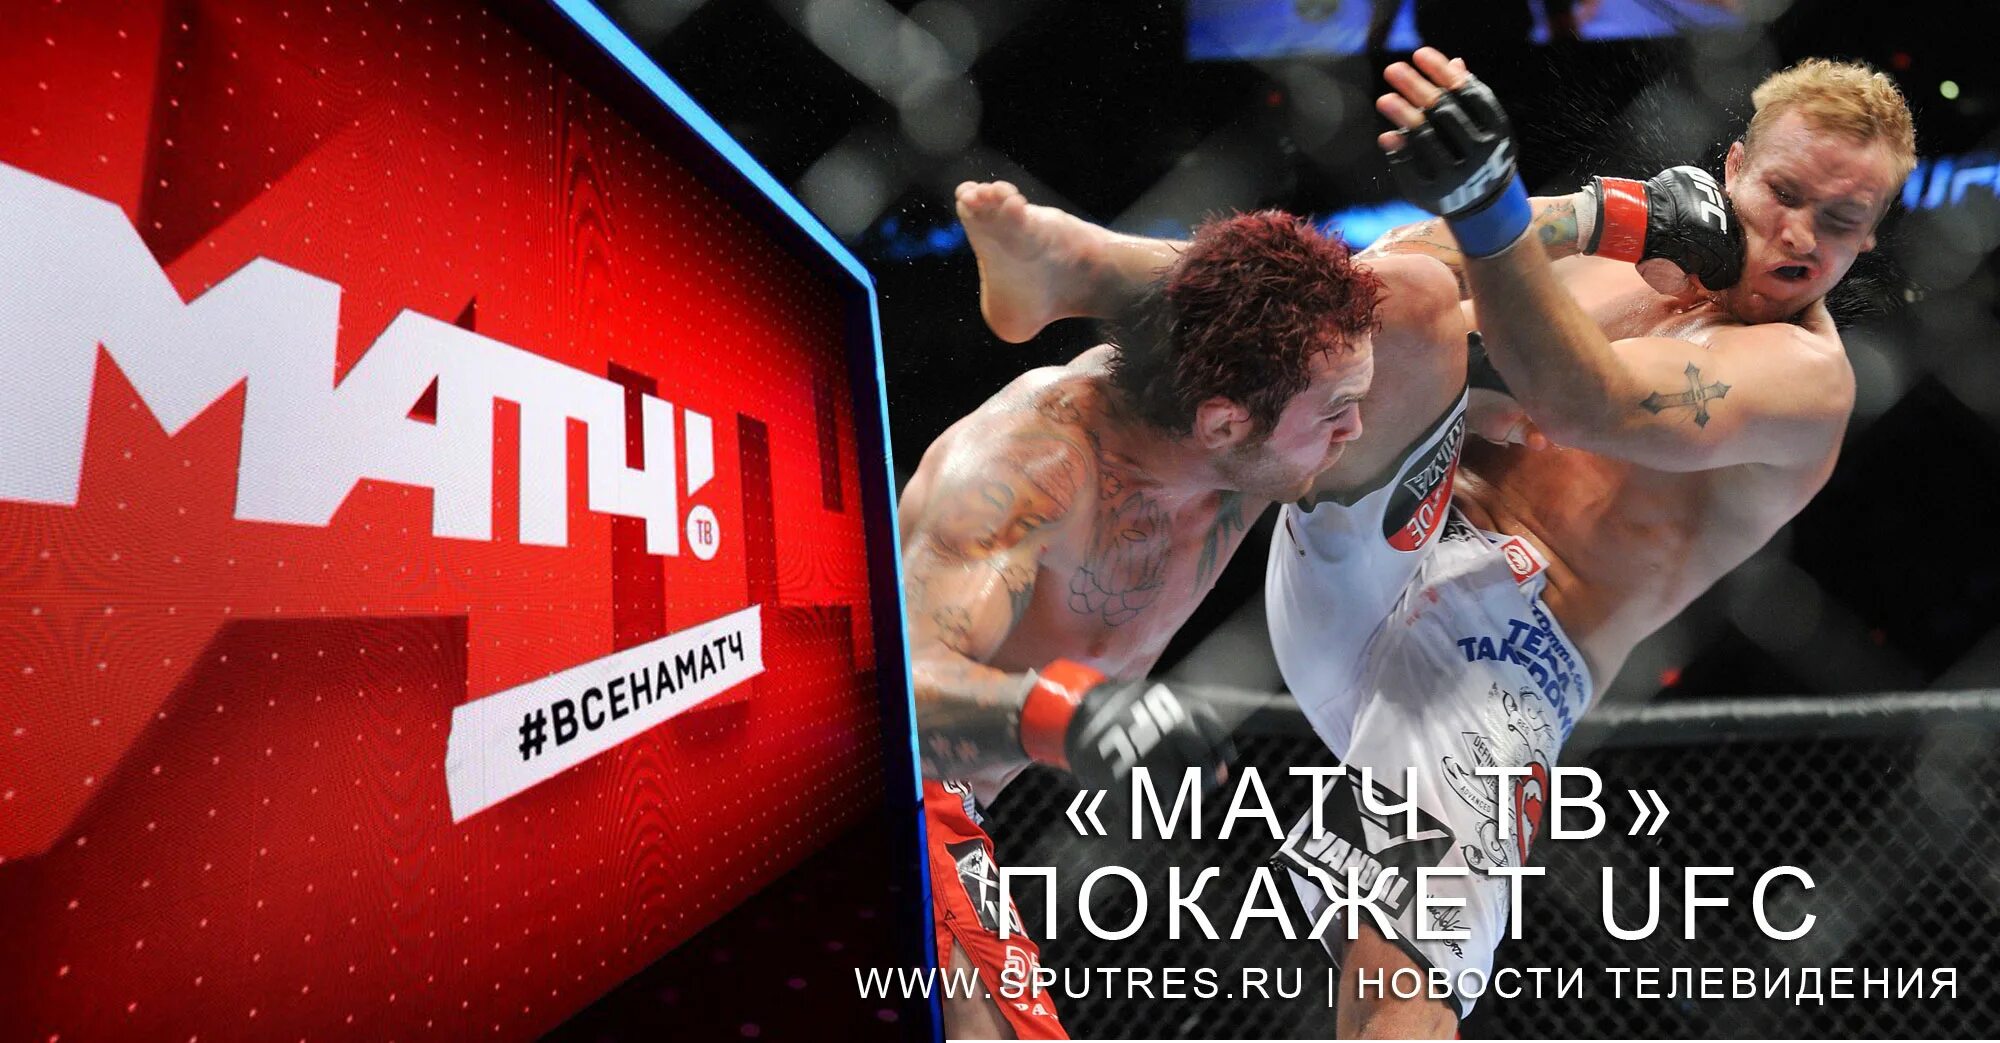 Матч ТВ UFC. UFC прямая трансляция матч ТВ. Матч ТВ прямой эфир UFC. Реклама UFC на матч ТВ.